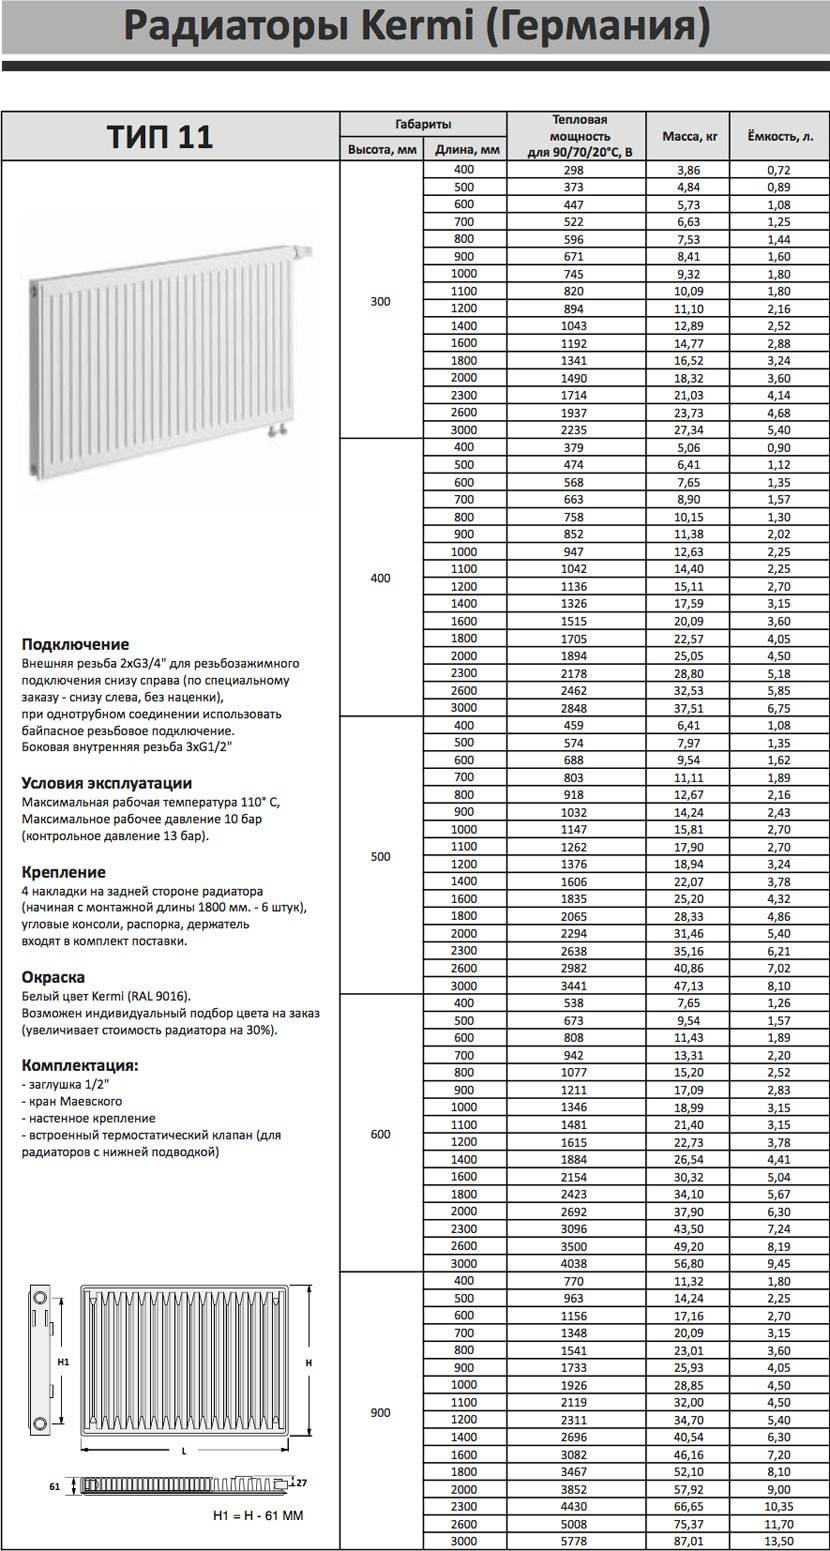 Радиаторы «керми» — отличное качество и характеристики